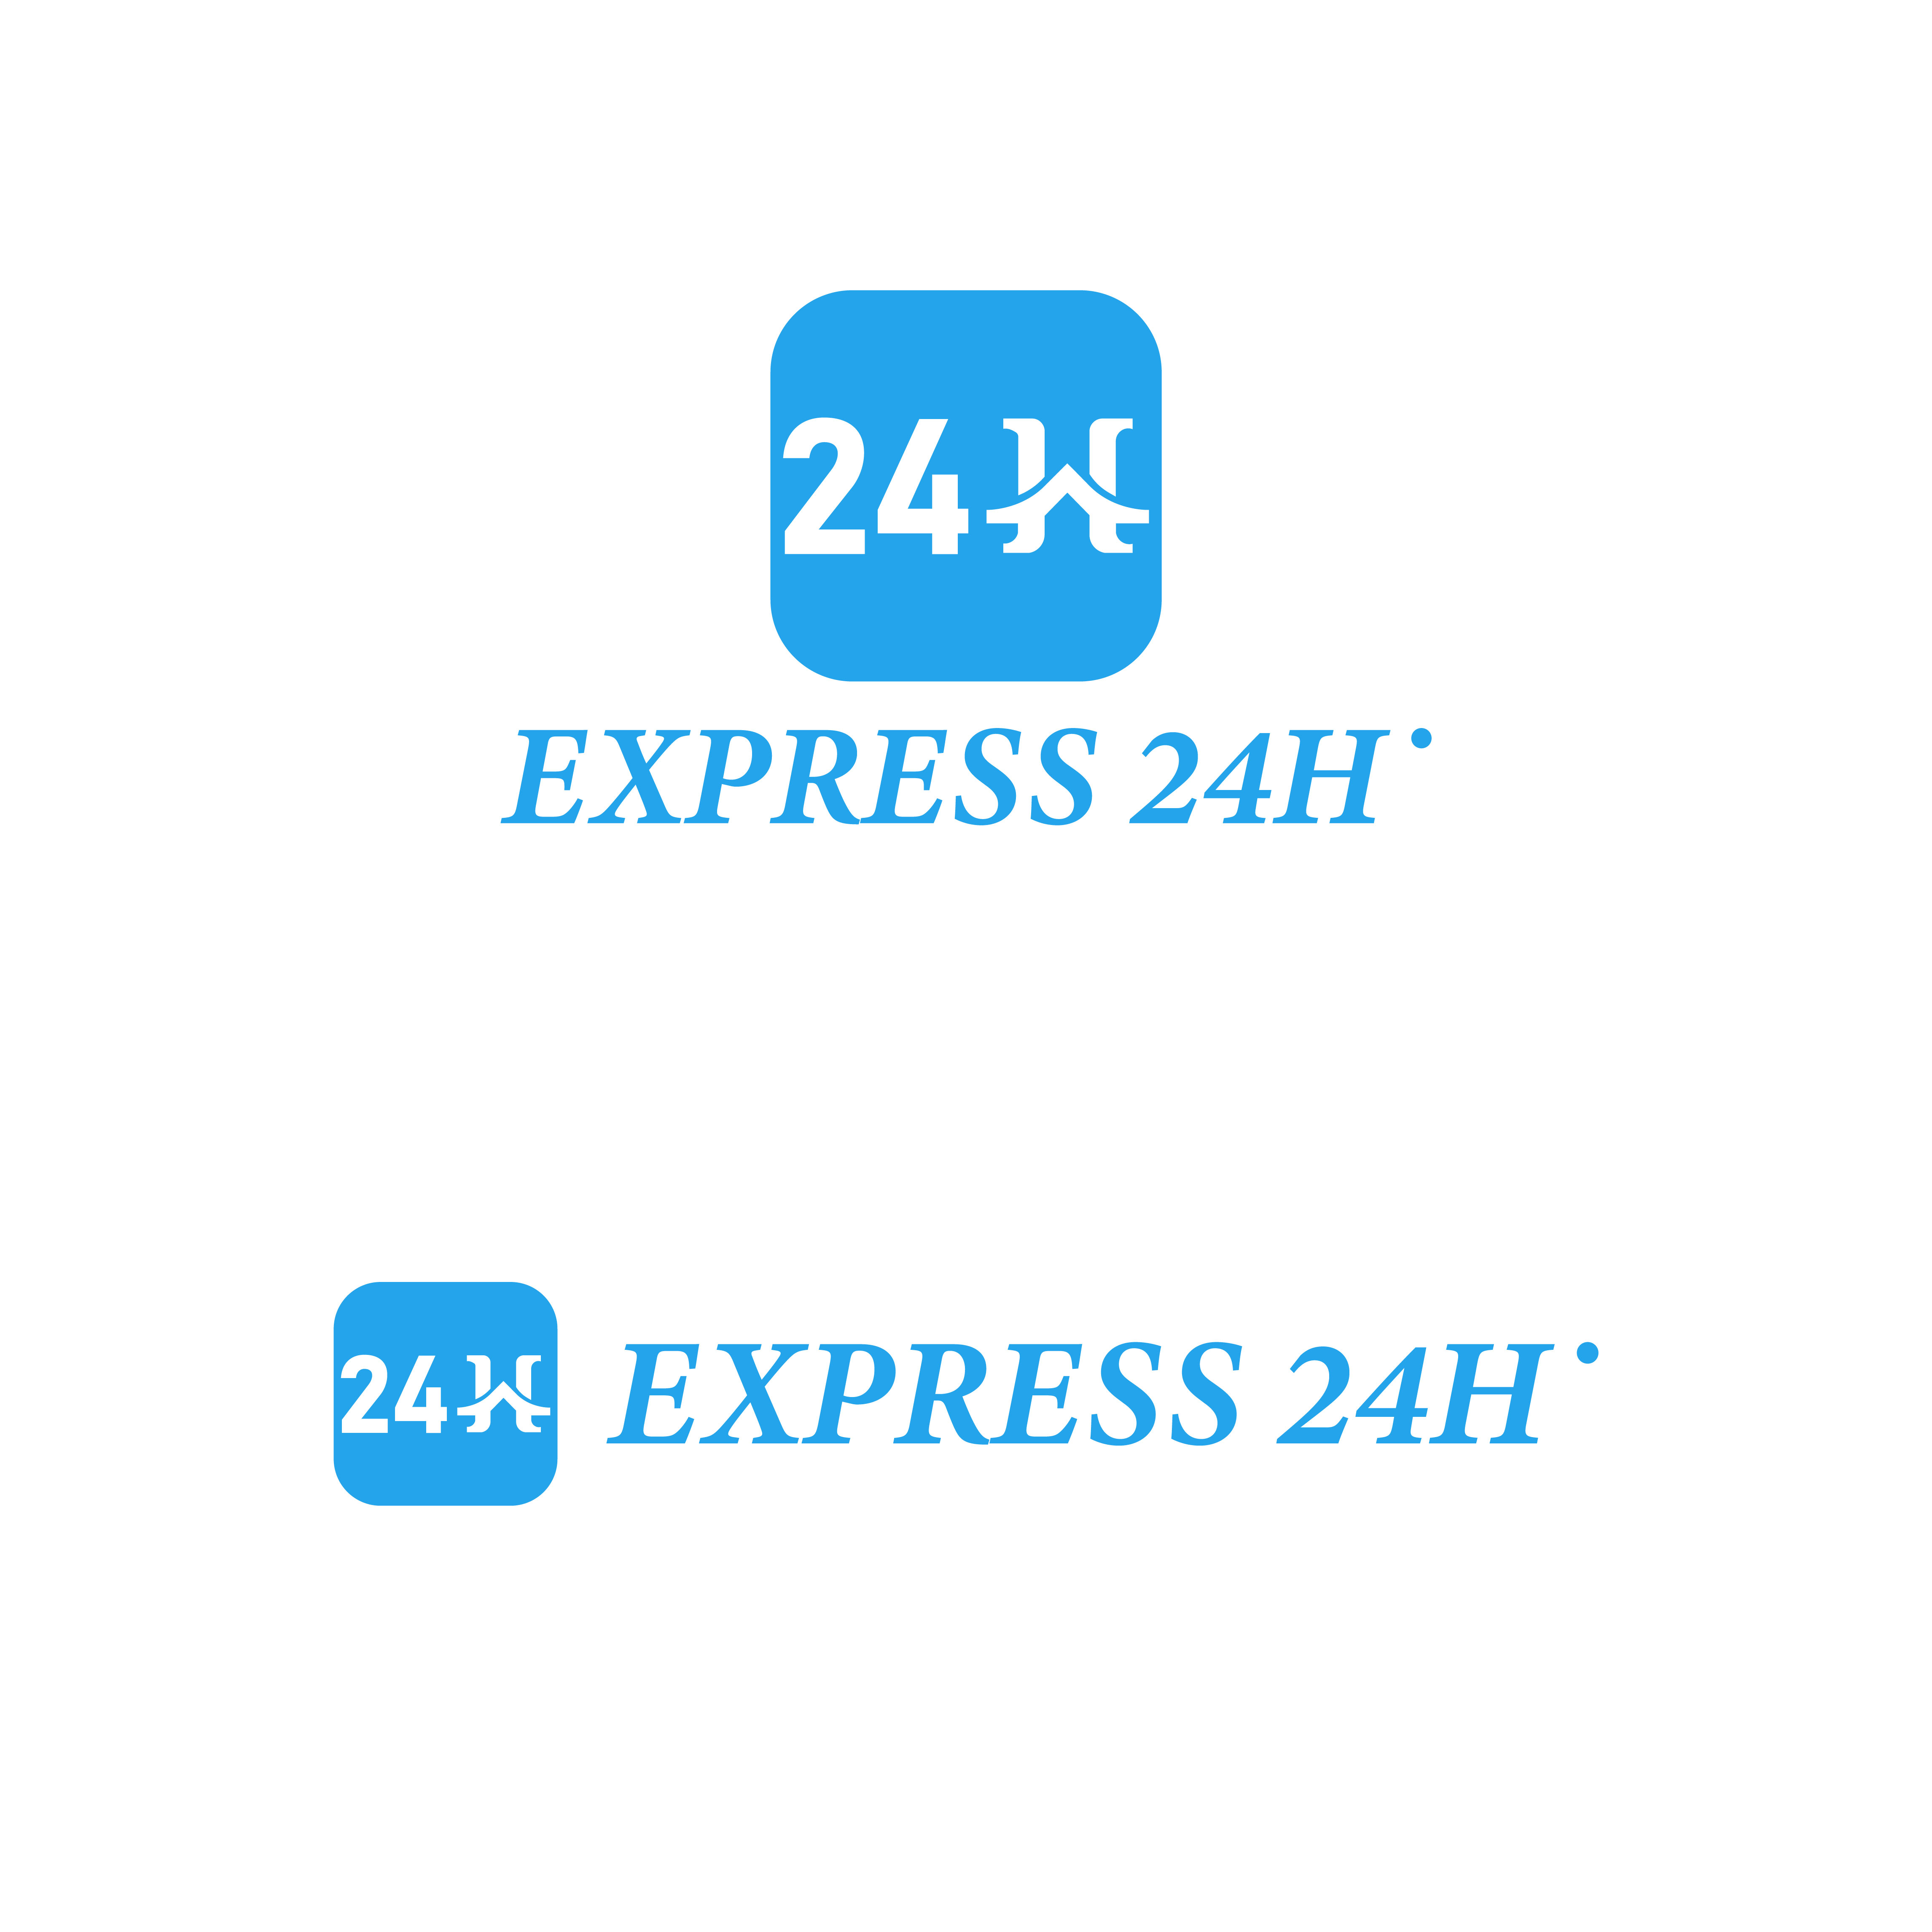 Express 24H Logo Design main cover.